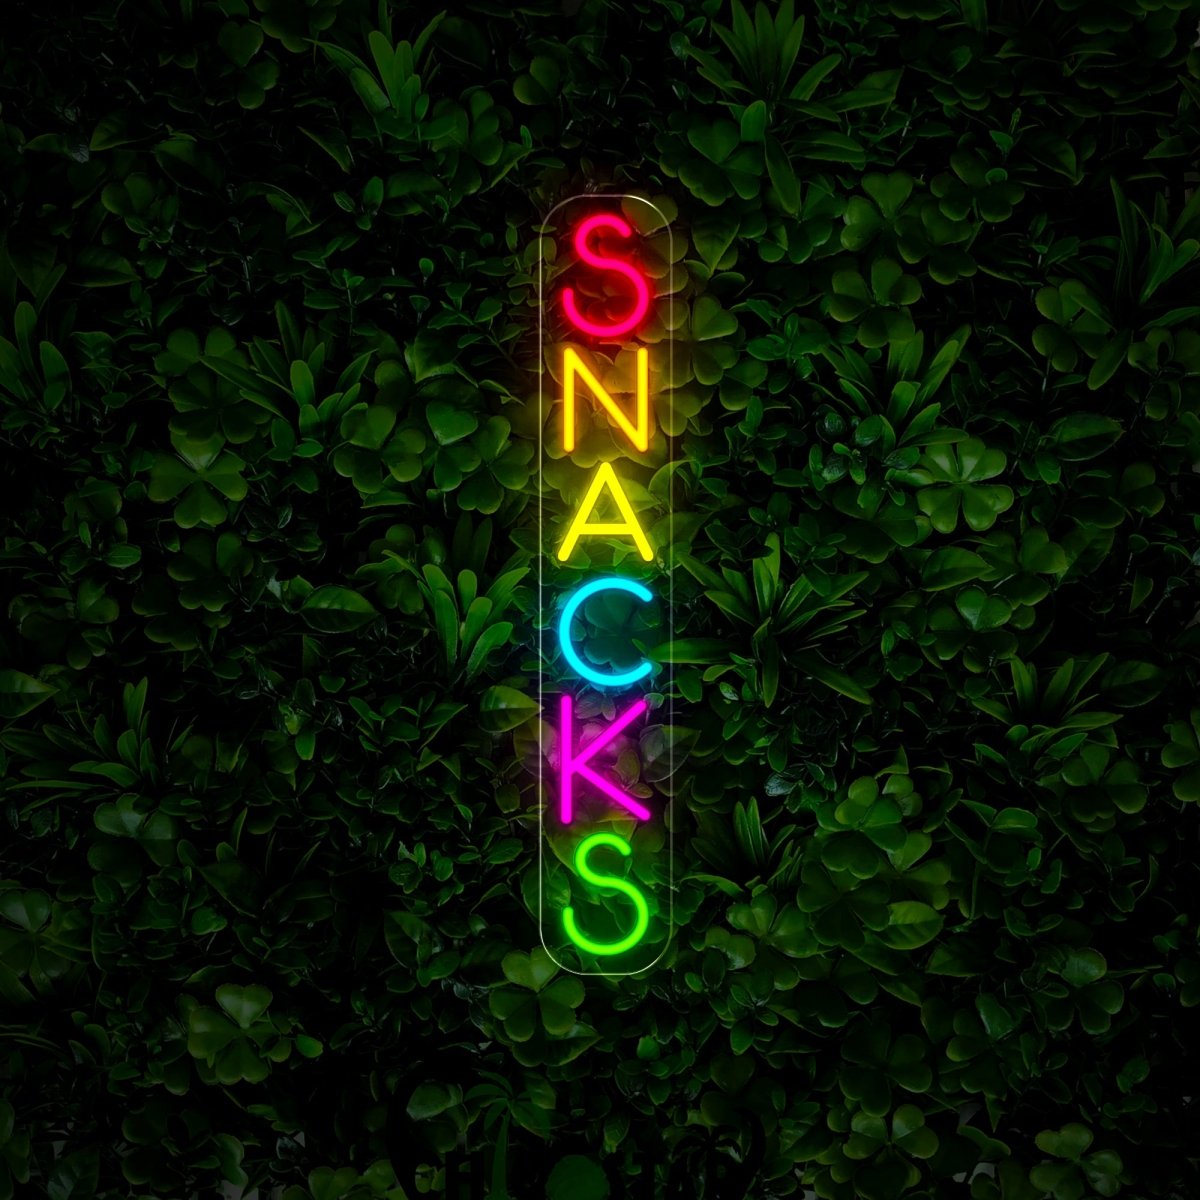 Snacks Neon Sign - Reels Custom